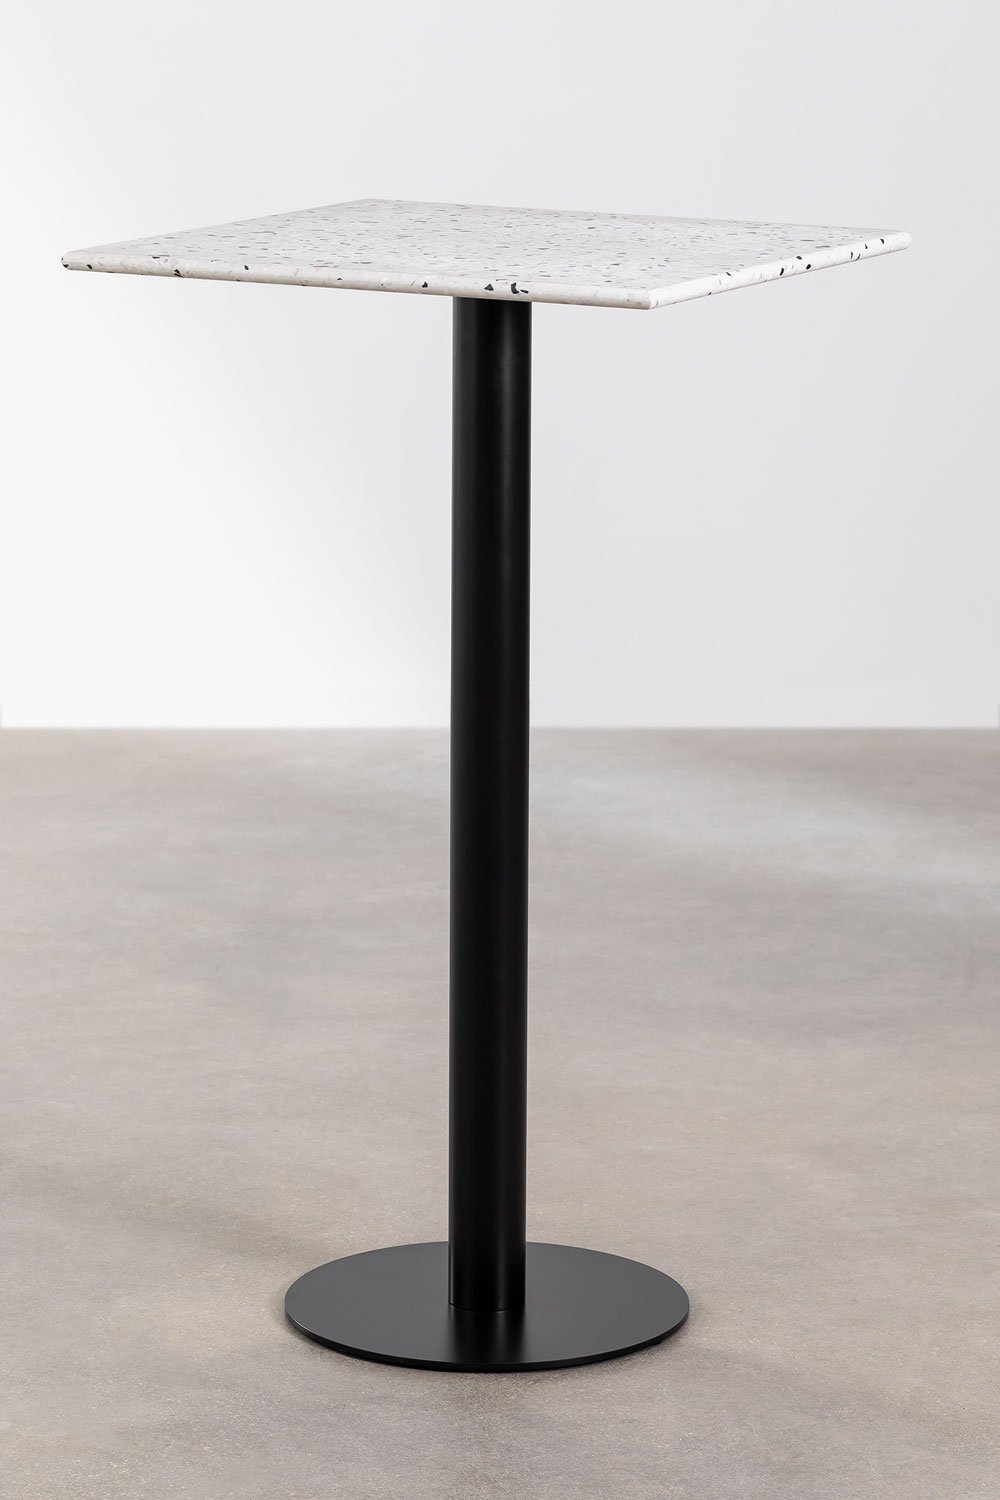 Kwadratowy wysoki stolik barowy z lastryko (60x60 cm) Dolce, obrazek w galerii 1